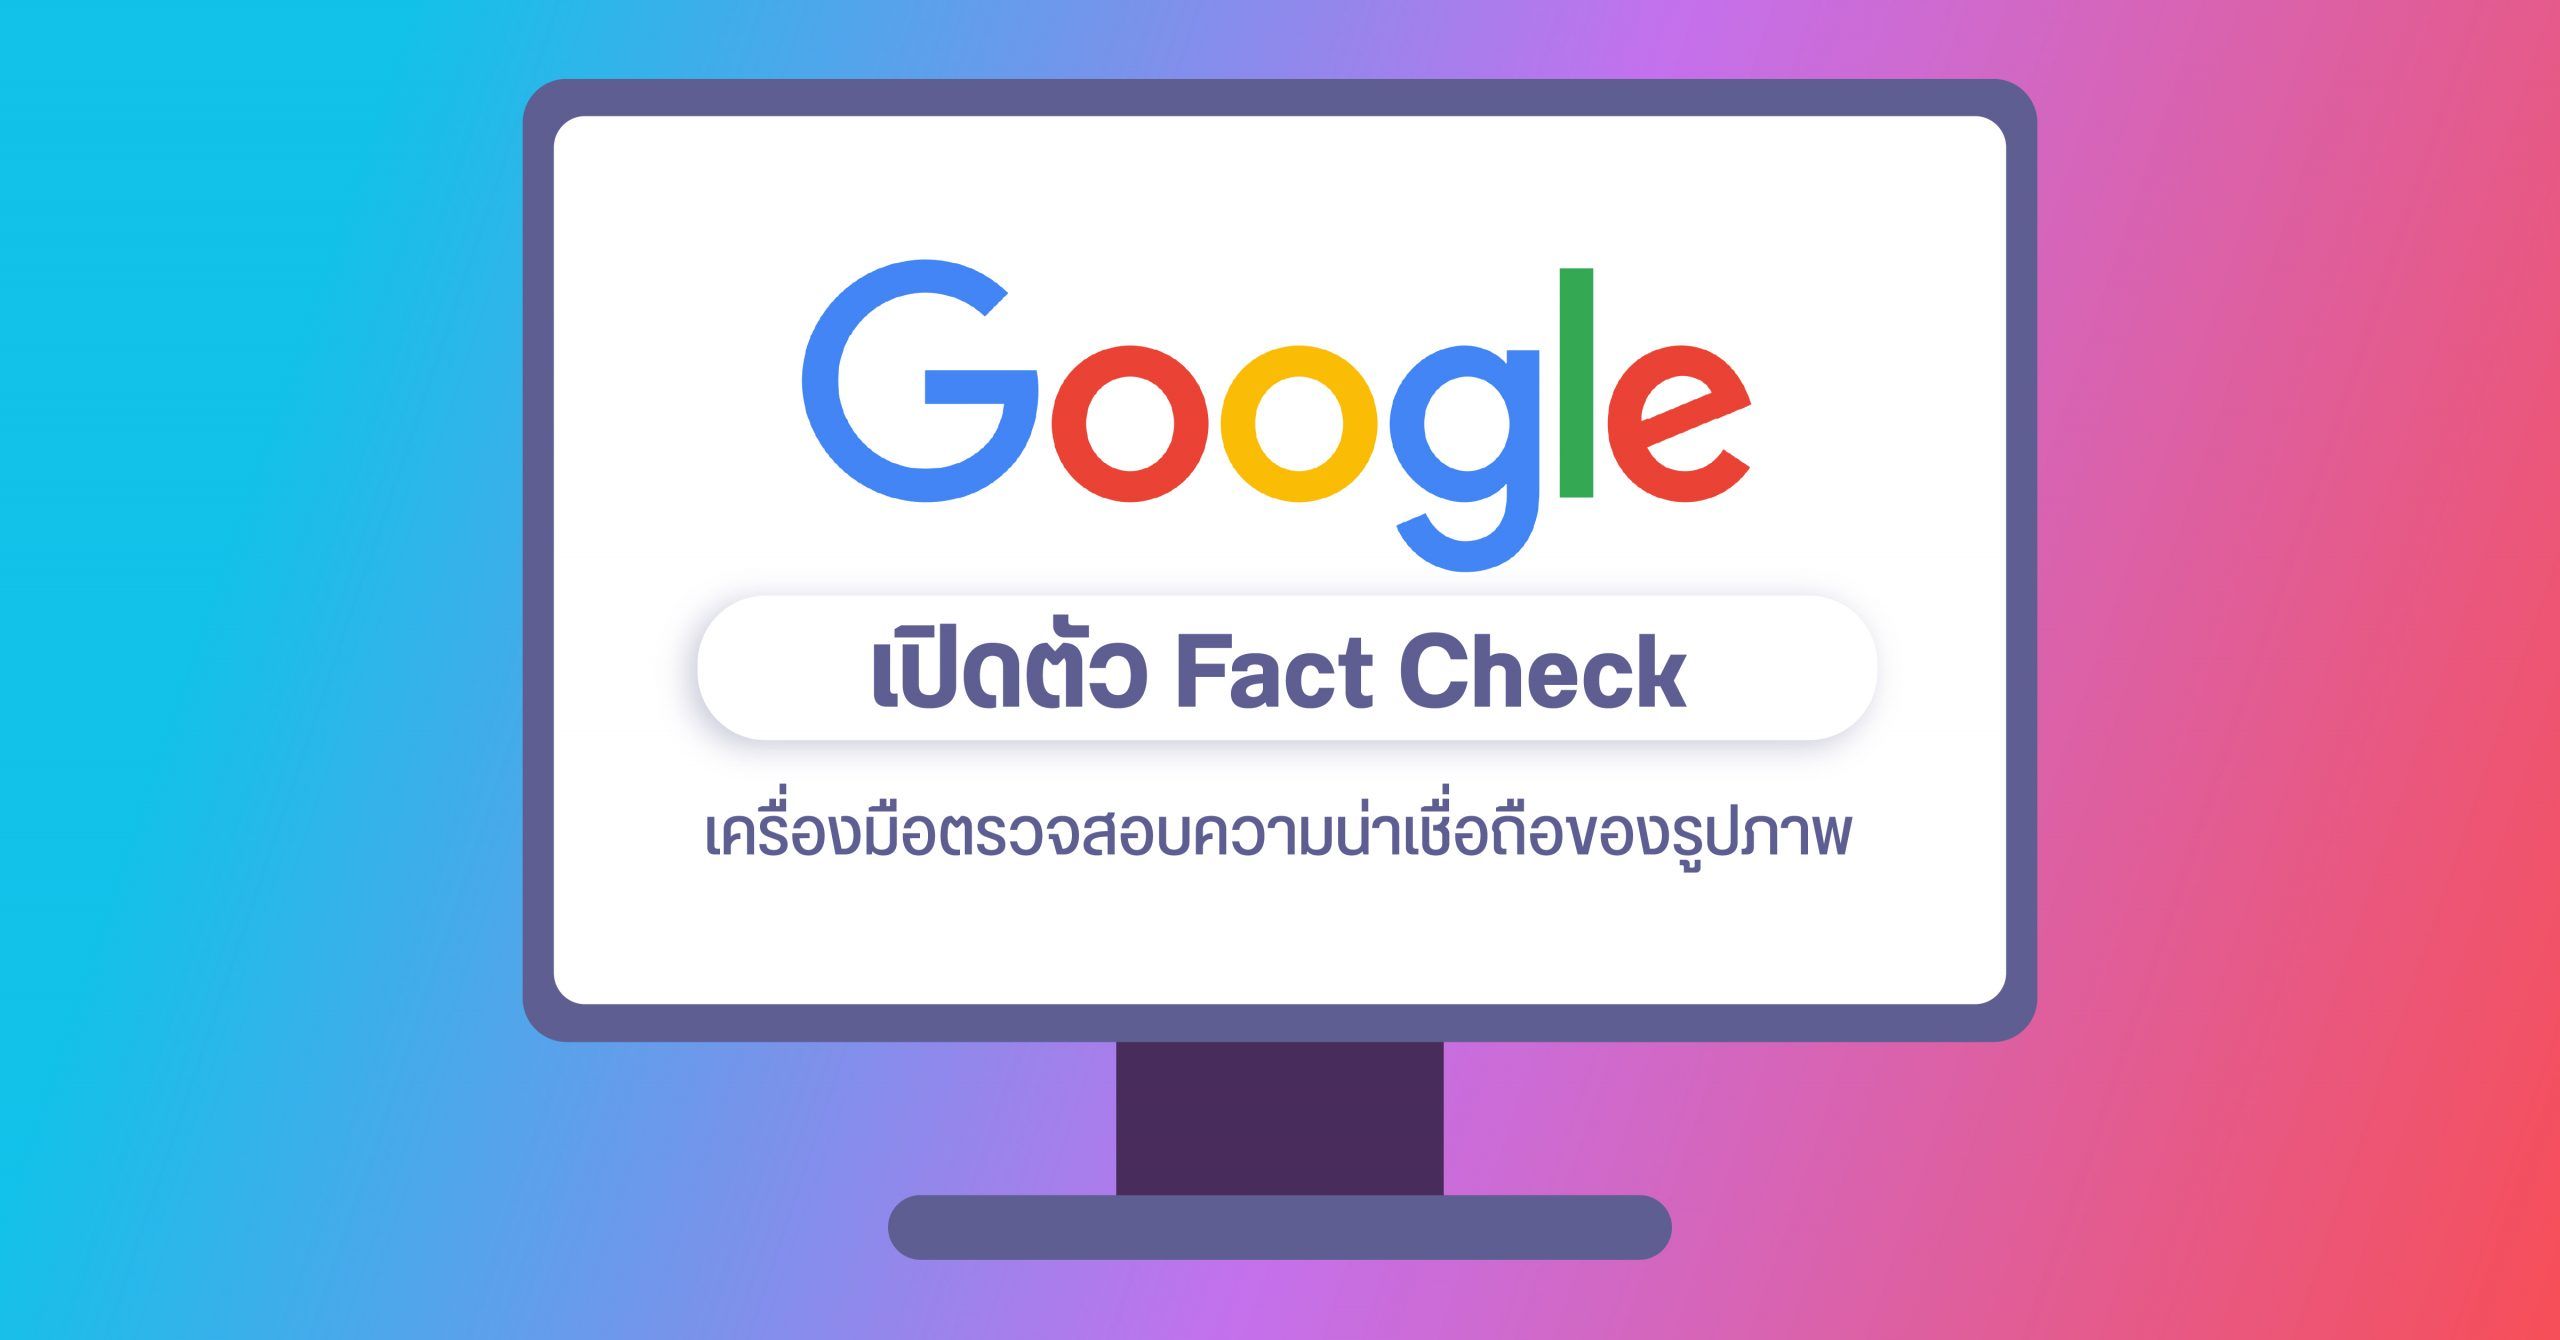 Google เปิดตัวฟีเจอร์ Fact check เพื่อตรวจสอบรูปใน Google search ว่าเป็นของจริง หรือถูกตัดต่อมาอีกที